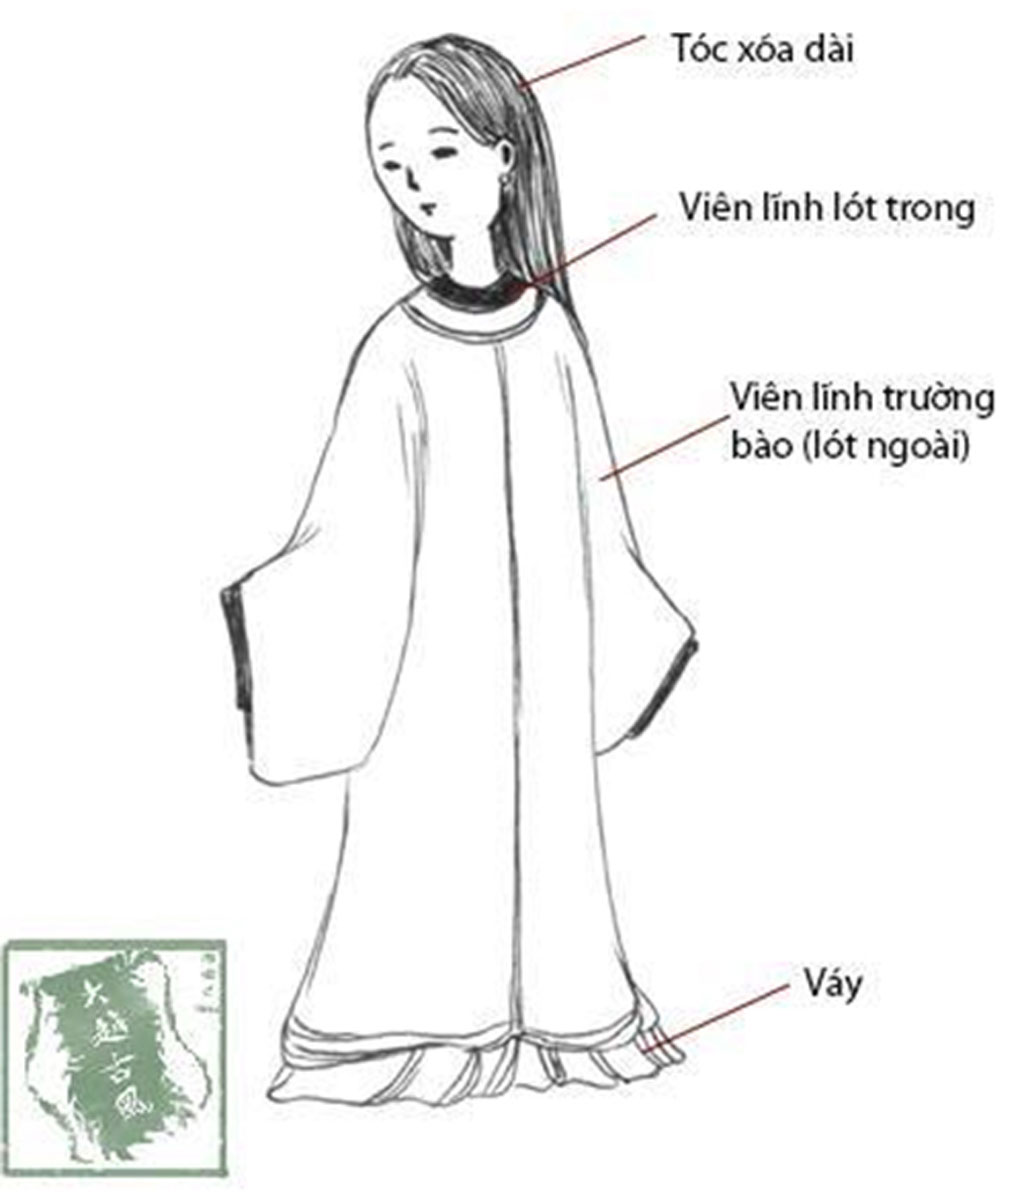 Áo dài cách tân mang đến sự mới mẻ và phong cách cho trang phục dân tộc của Việt Nam. Hãy xem hình ảnh để cảm nhận được vẻ đẹp độc đáo của áo dài cách tân và cảm nhận được sự tự tin và quý phái khi mặc.